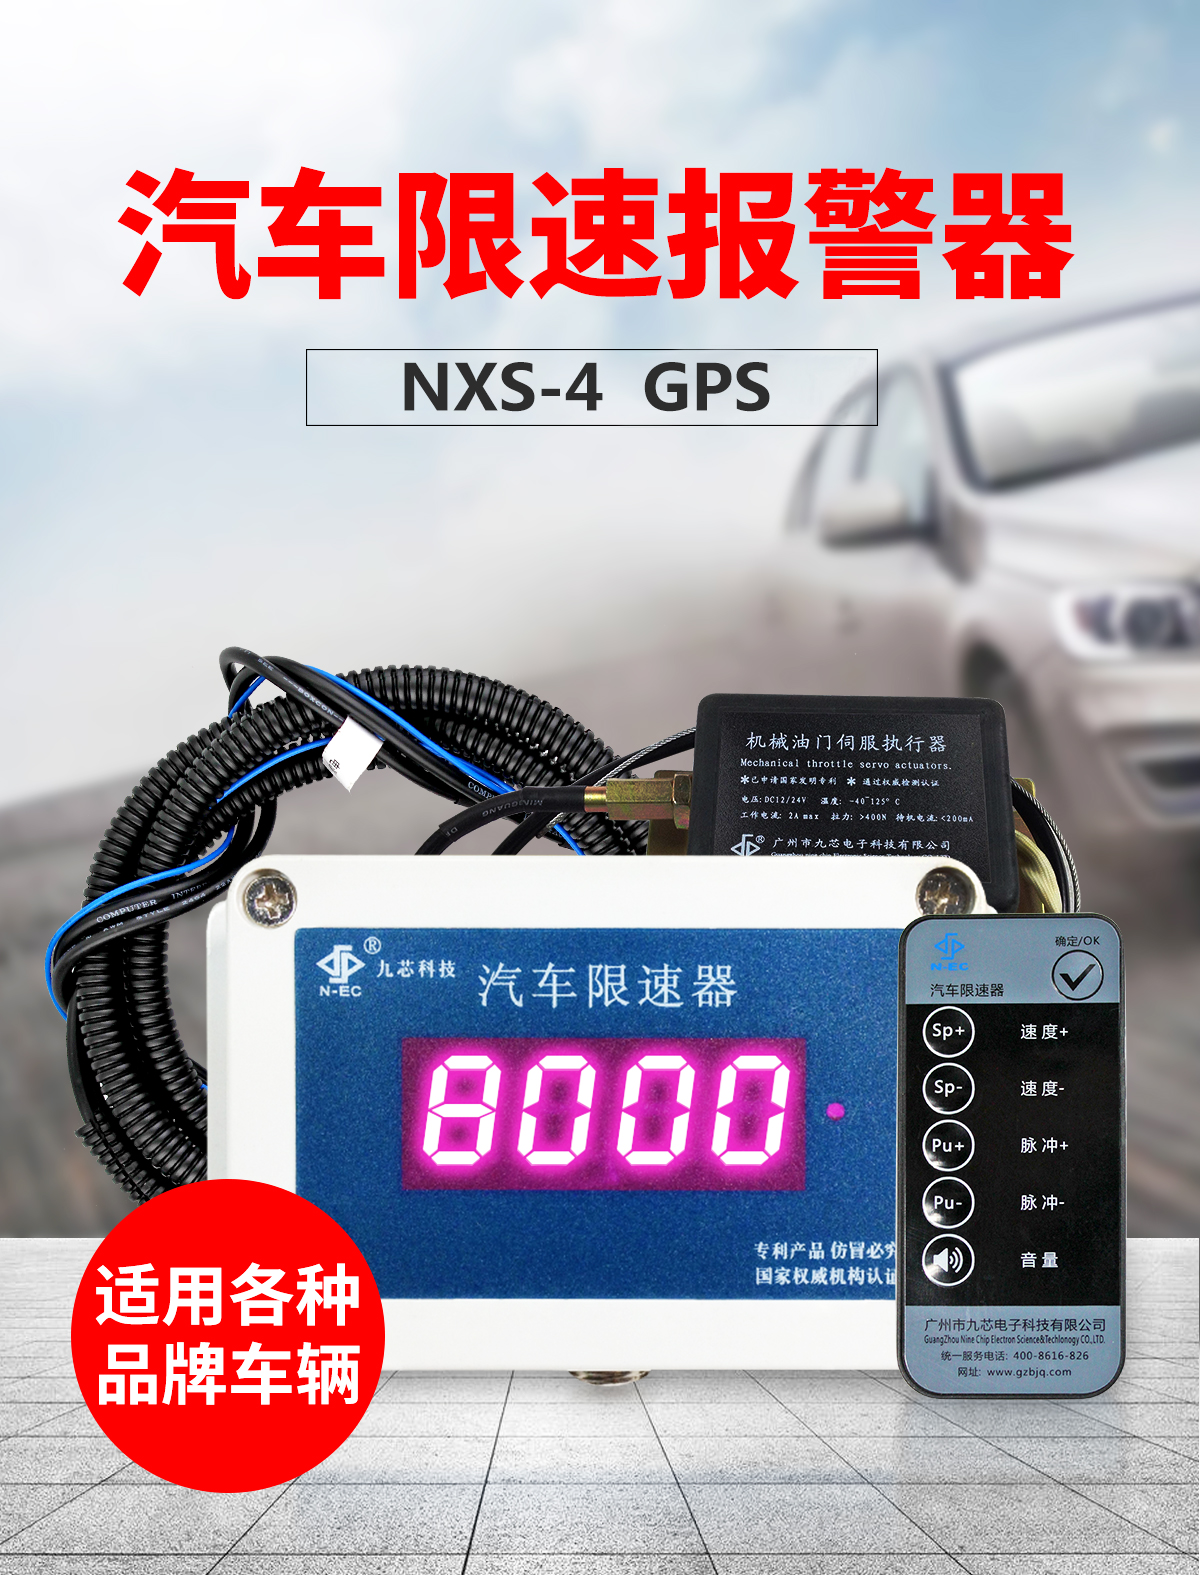 NXS-4GPS汽车限速器